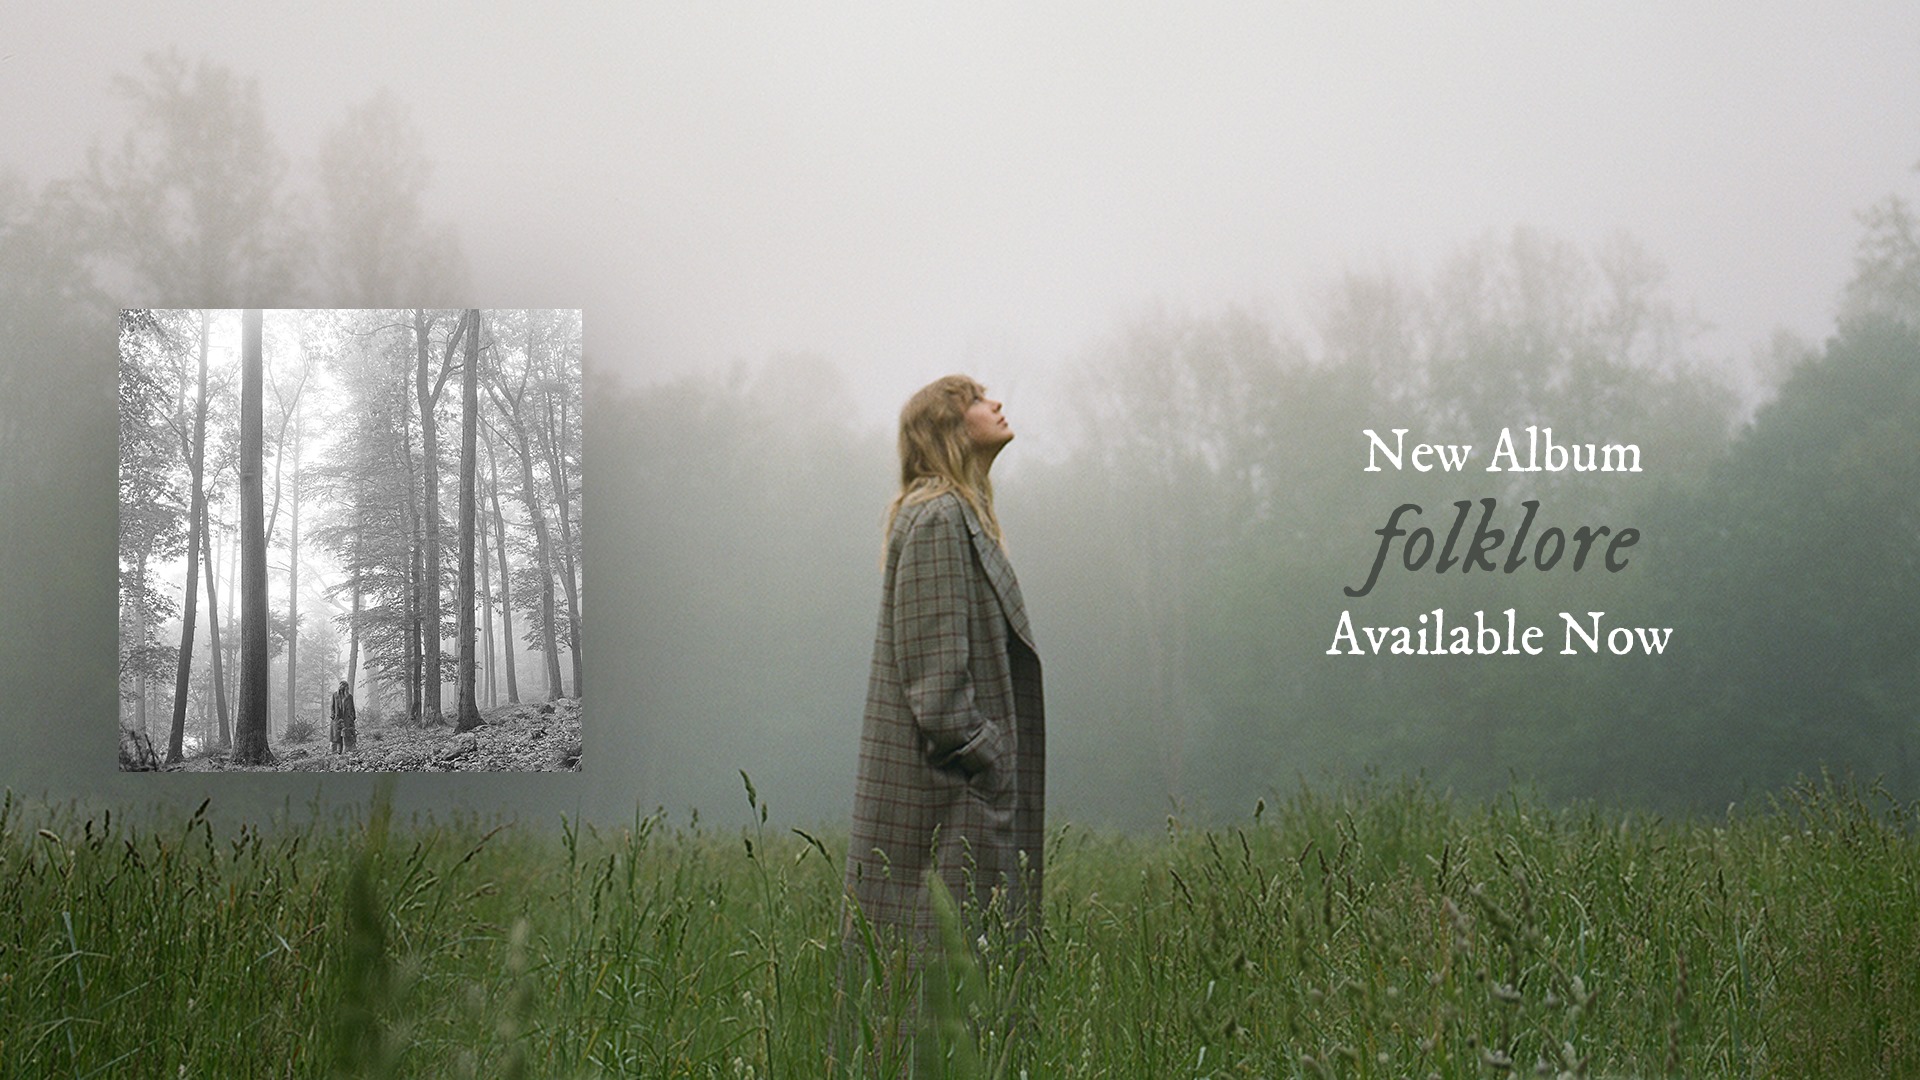 Folklore là album phòng thu thứ 8 của TaylorSwift